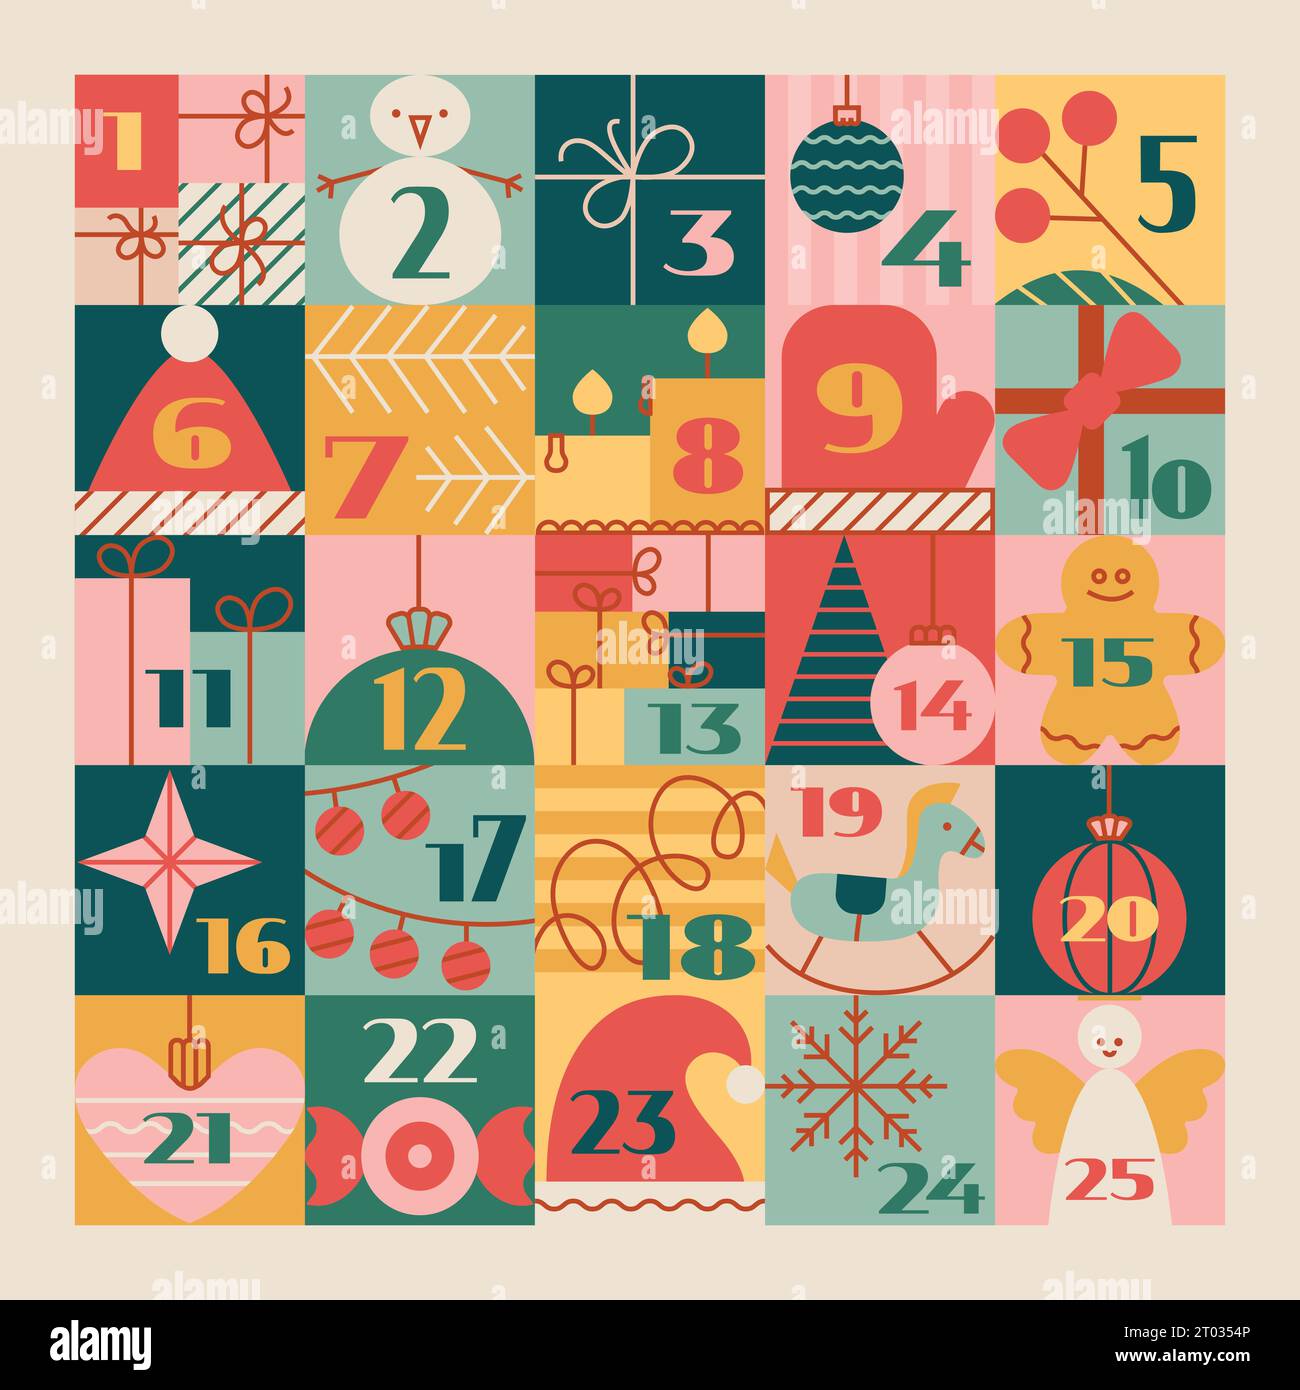 Calendario dell'avvento di Natale con simpatici elementi cartoni animati, numeri. Simpatica illustrazione vettoriale invernale per una tradizione divertente. Illustrazione Vettoriale